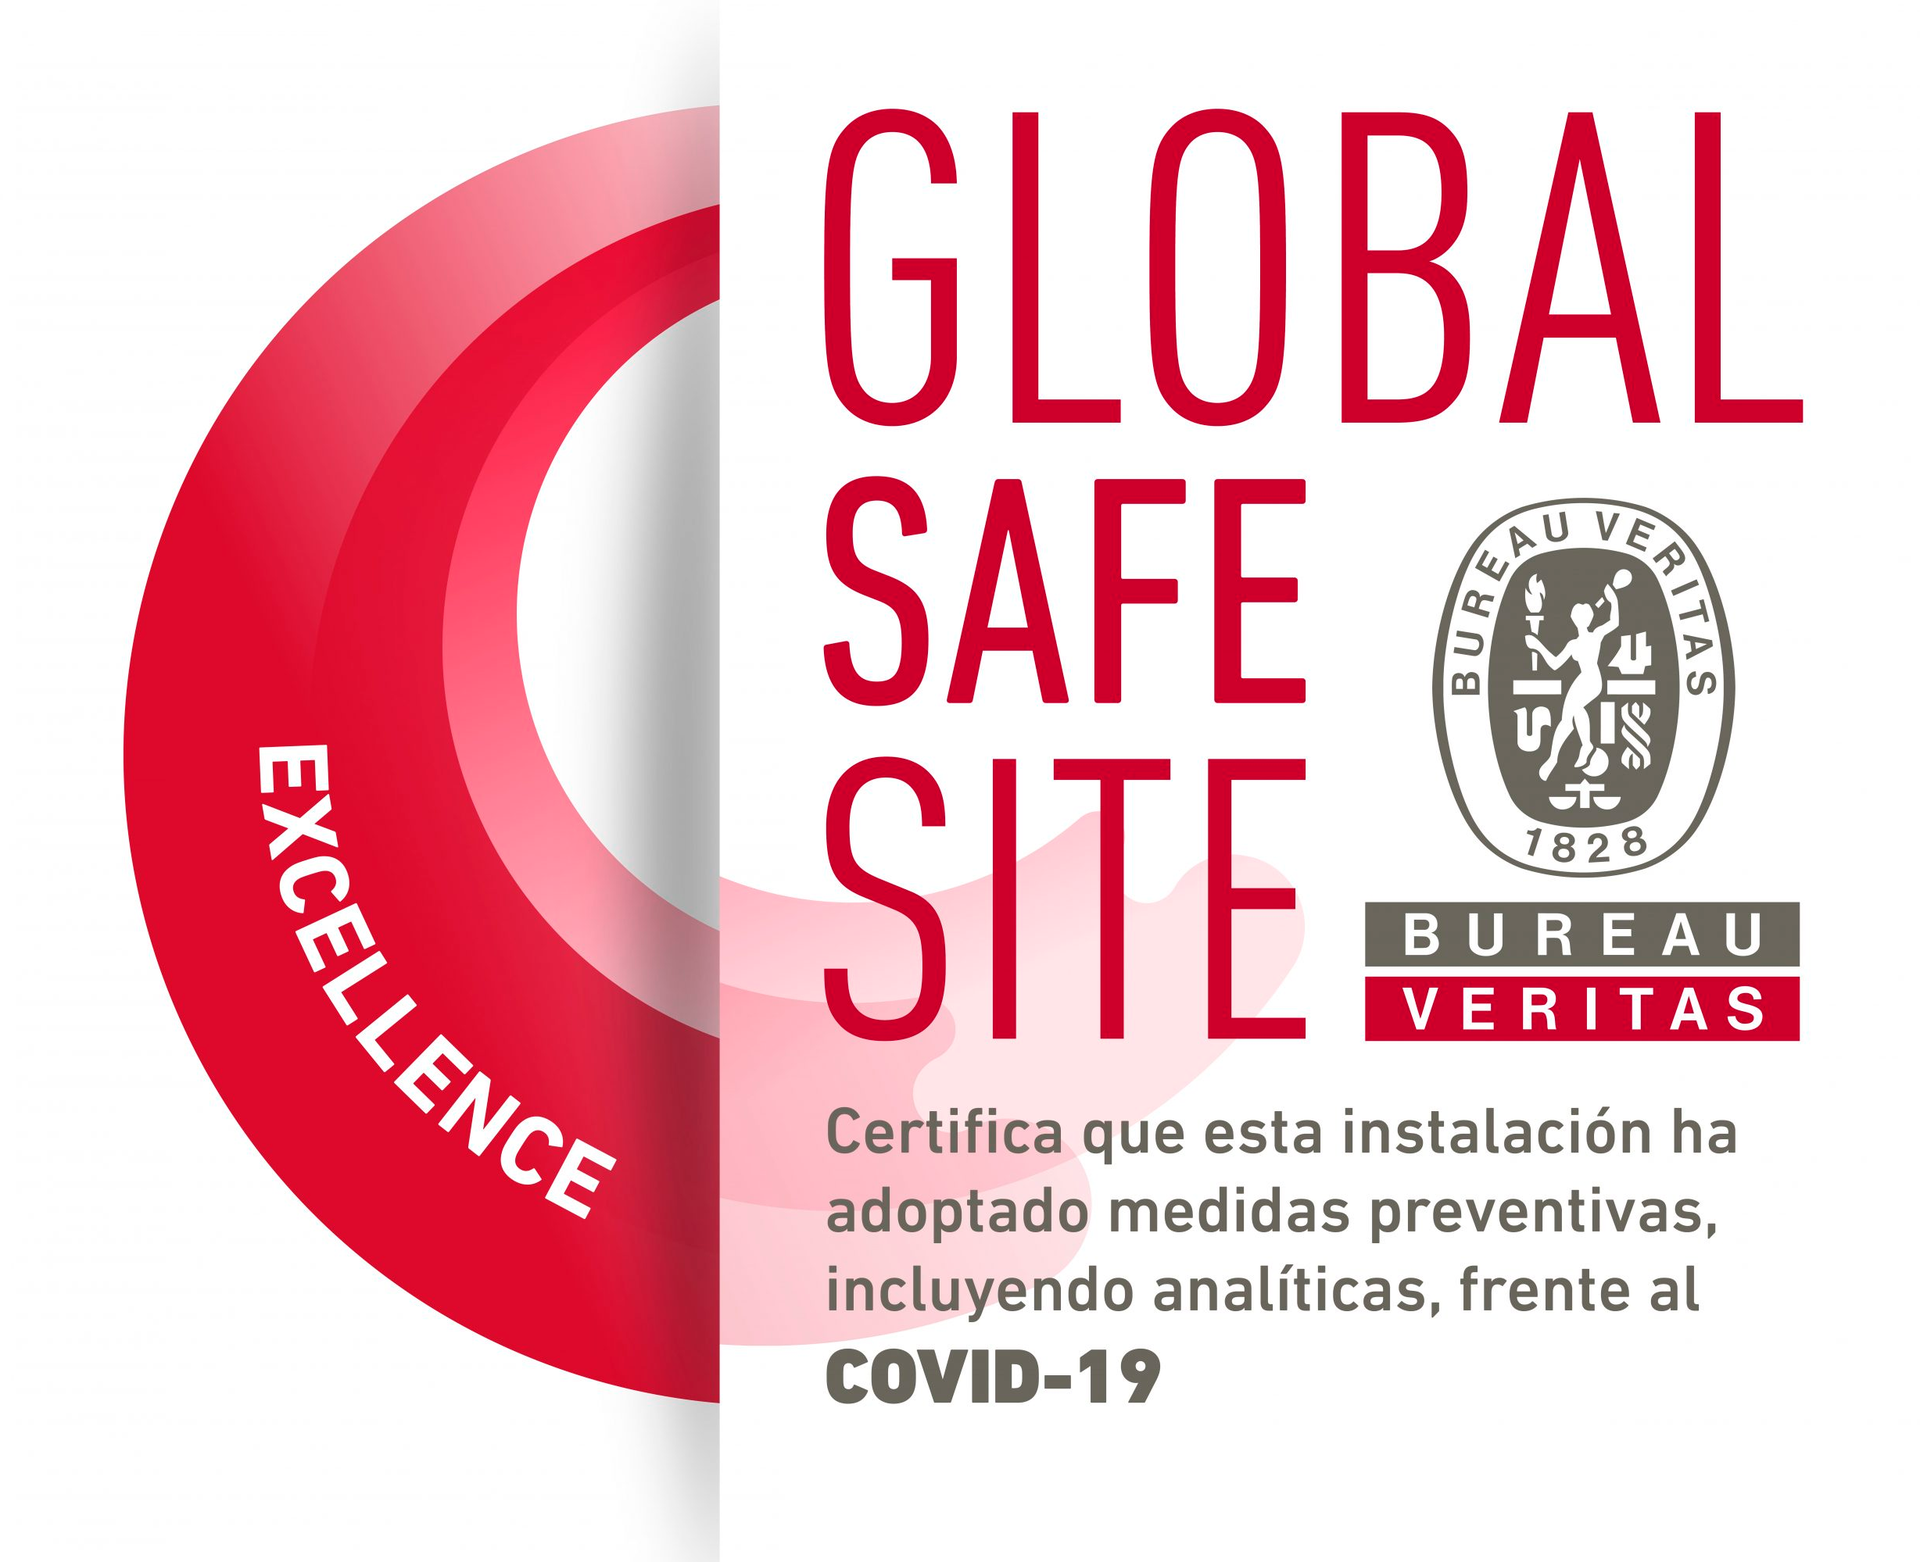 Icona dels certificat del Global Safe Site